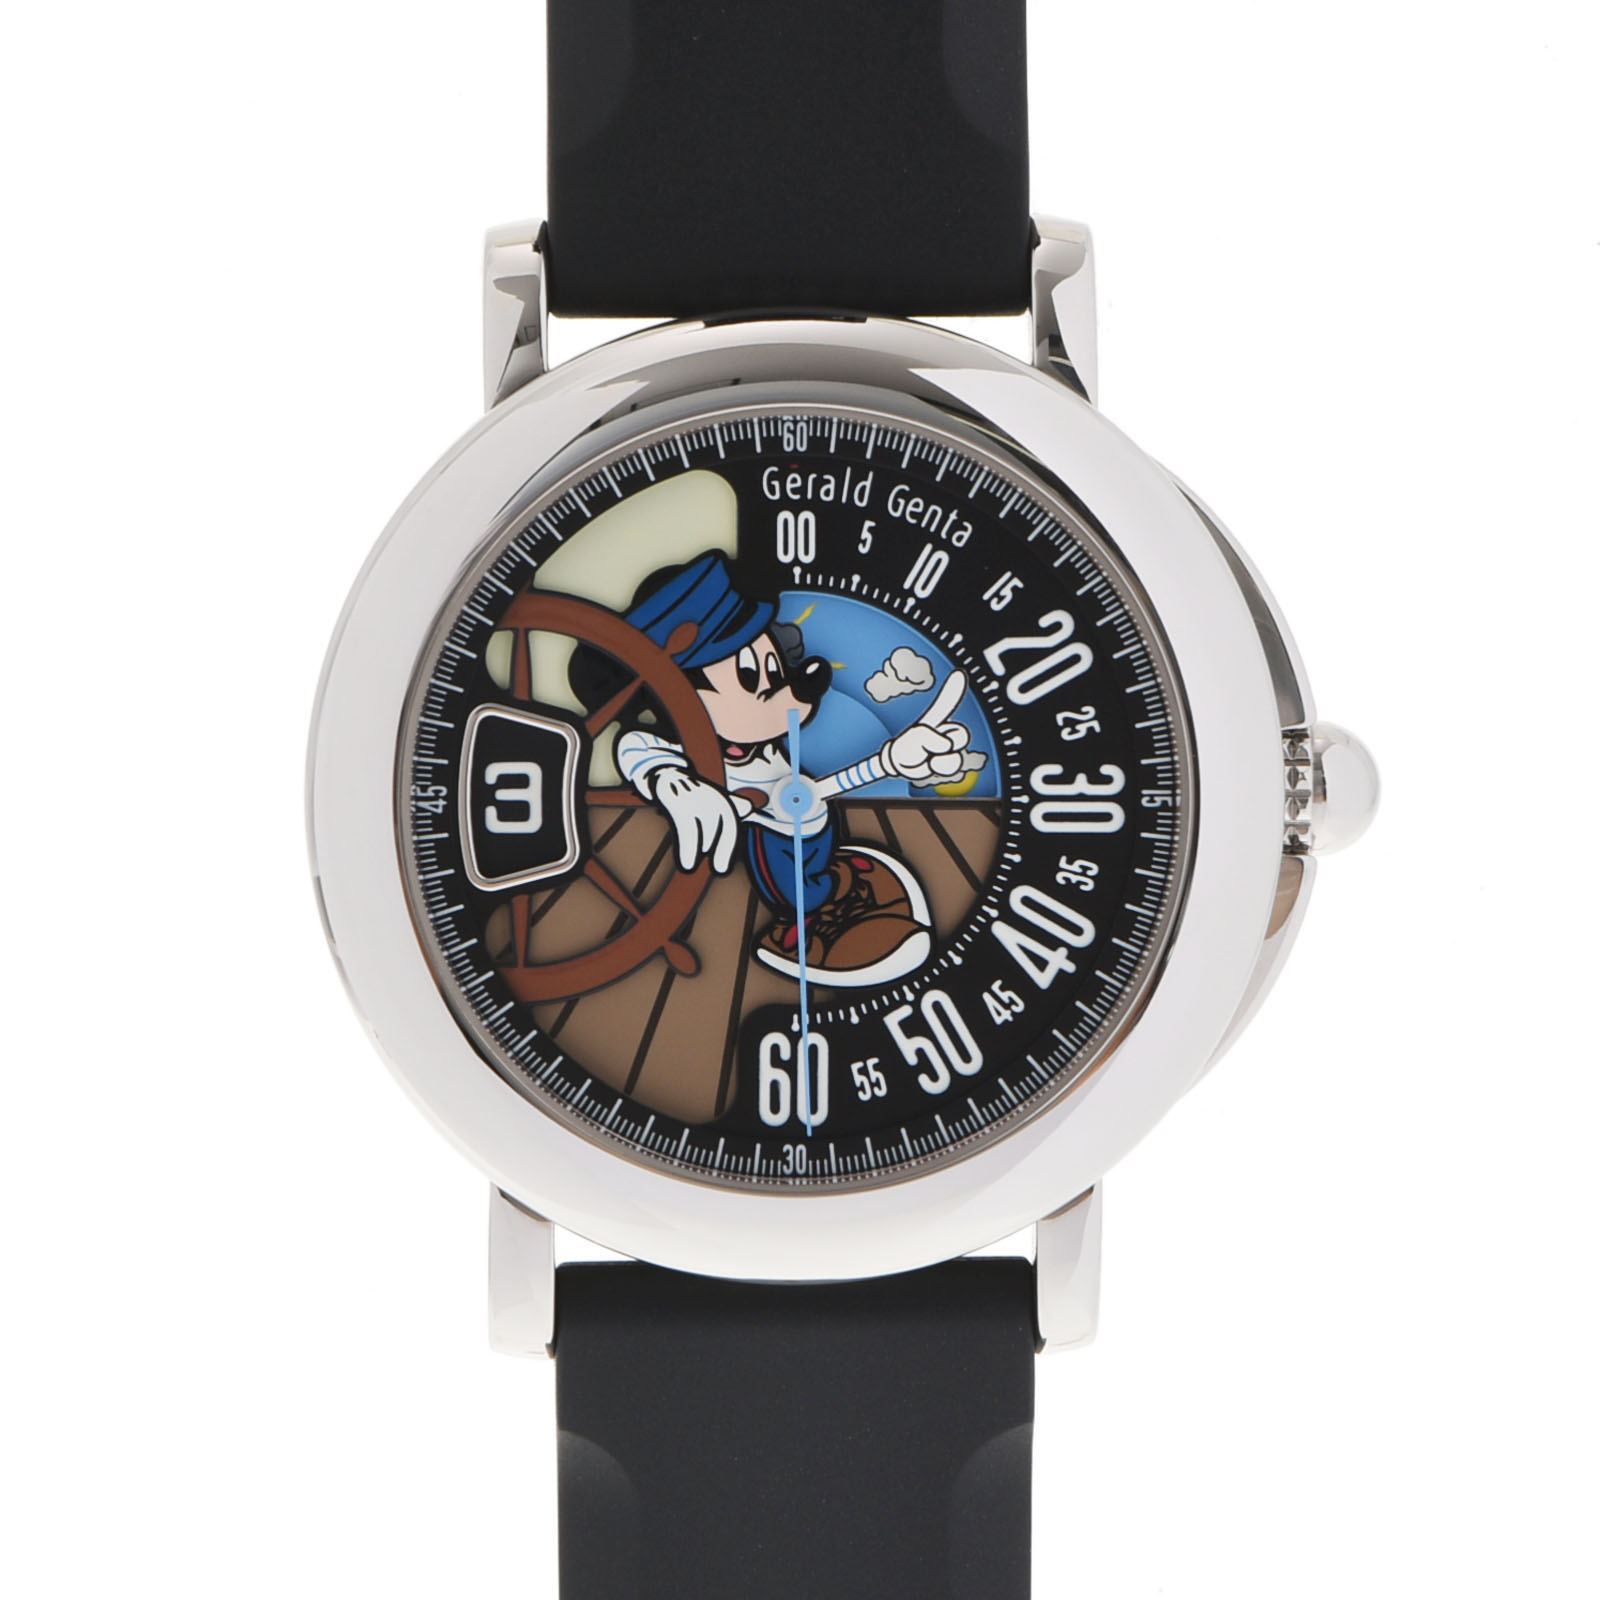 腕時計, メンズ腕時計 3155OFF15GERALD GENTA 150 RSF.X.10 SS A 